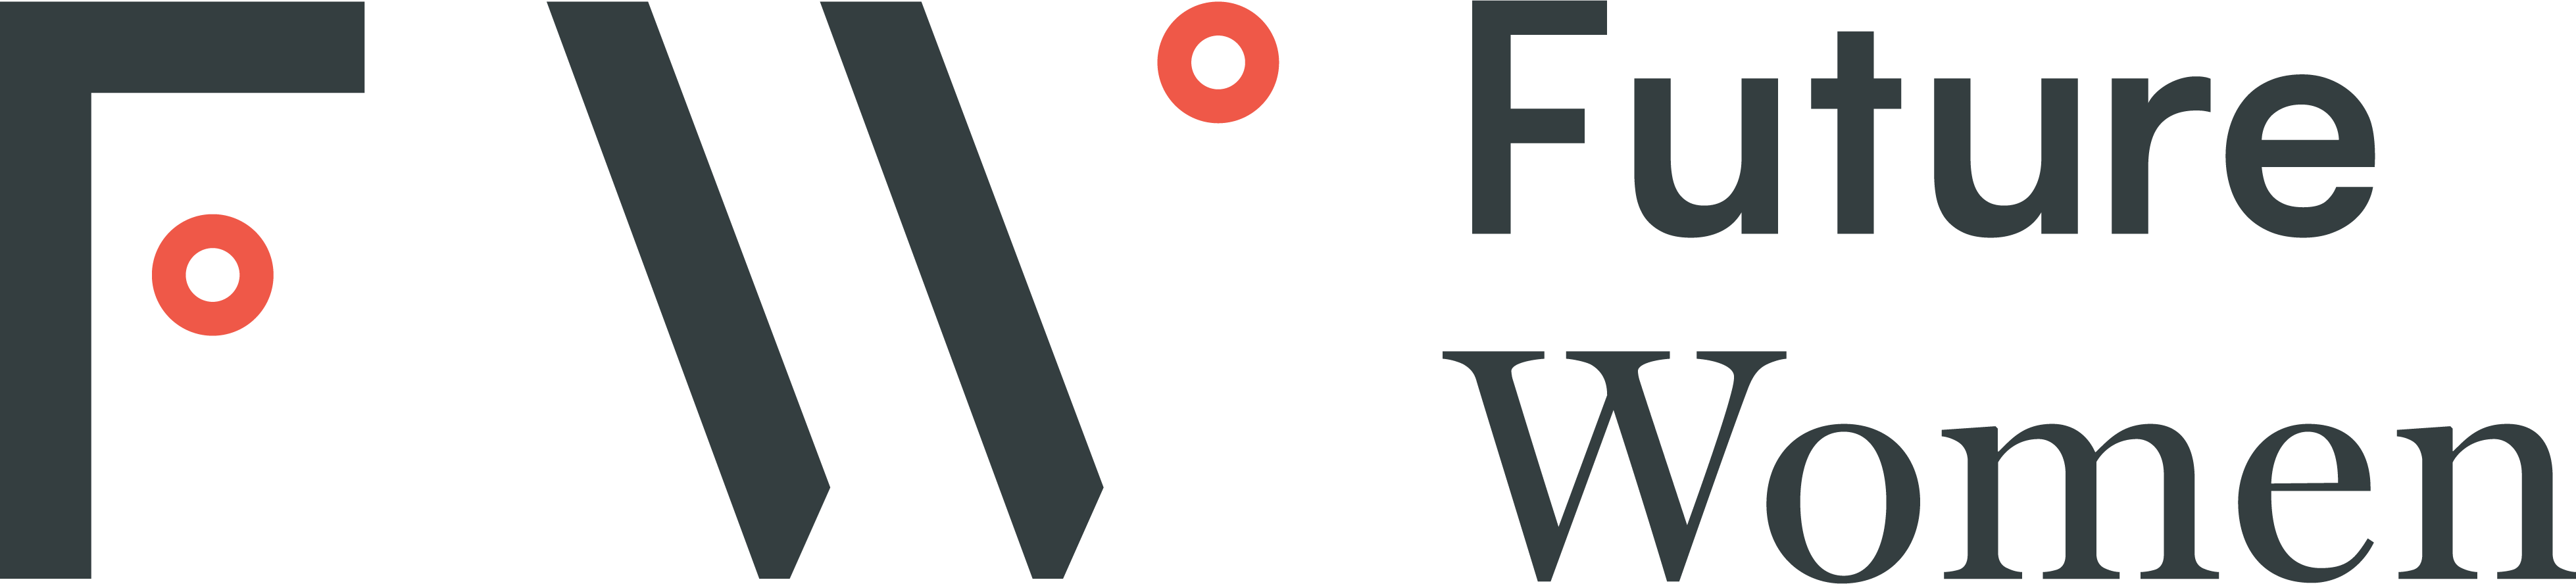 FW_Logotype_WithOrange